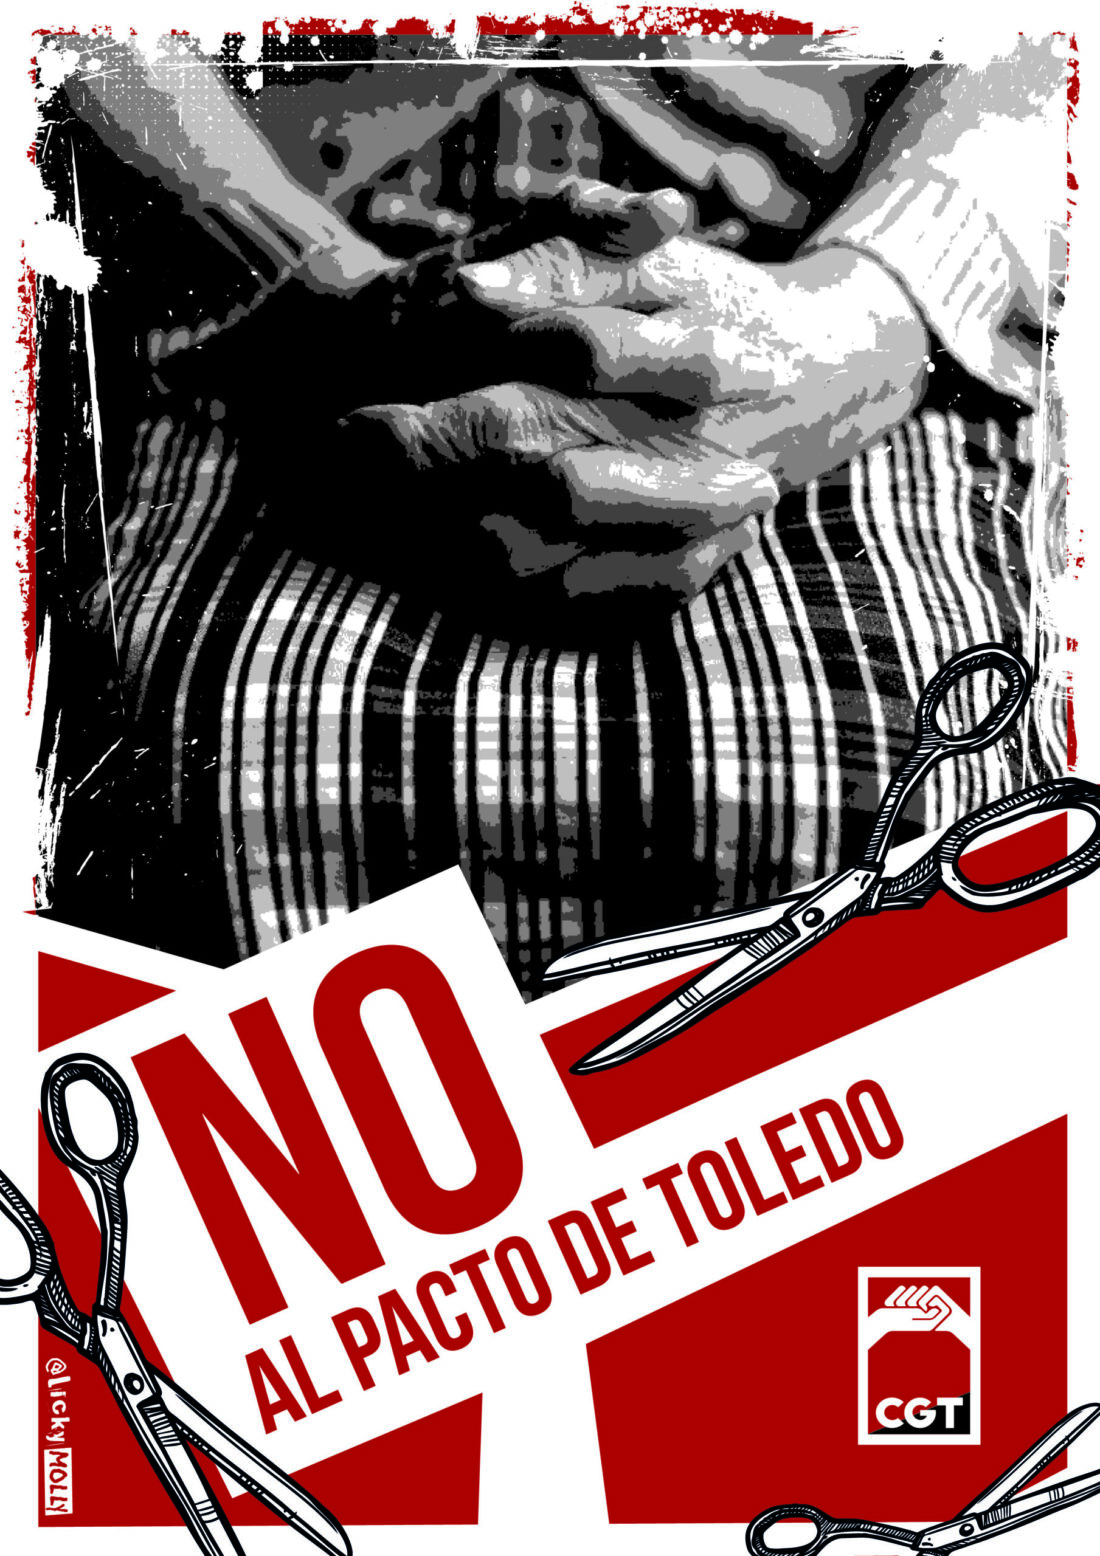 No al pacto de Toledo: Recomendaciones frente al Pacto de Toledo